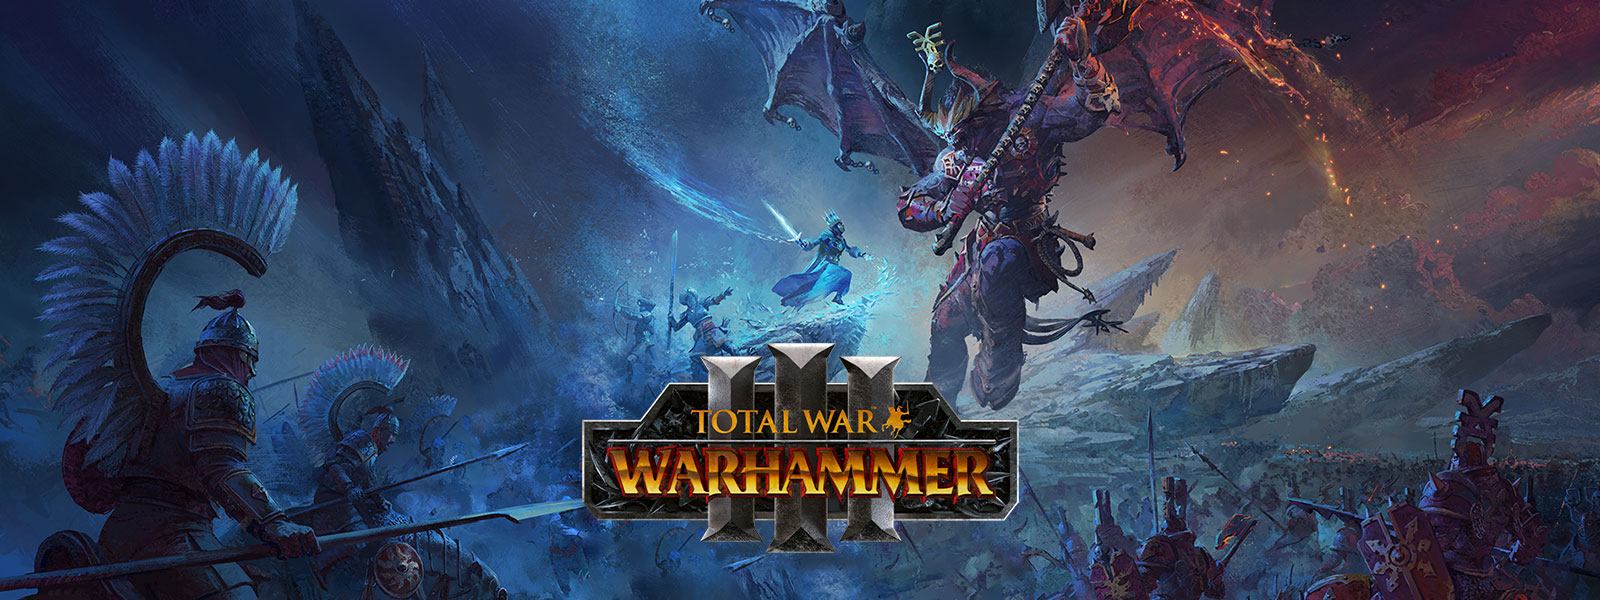 Total War Warhammer 3, ľadový čarodejník bojuje s obrovským dračím démonom nad bojiskom.